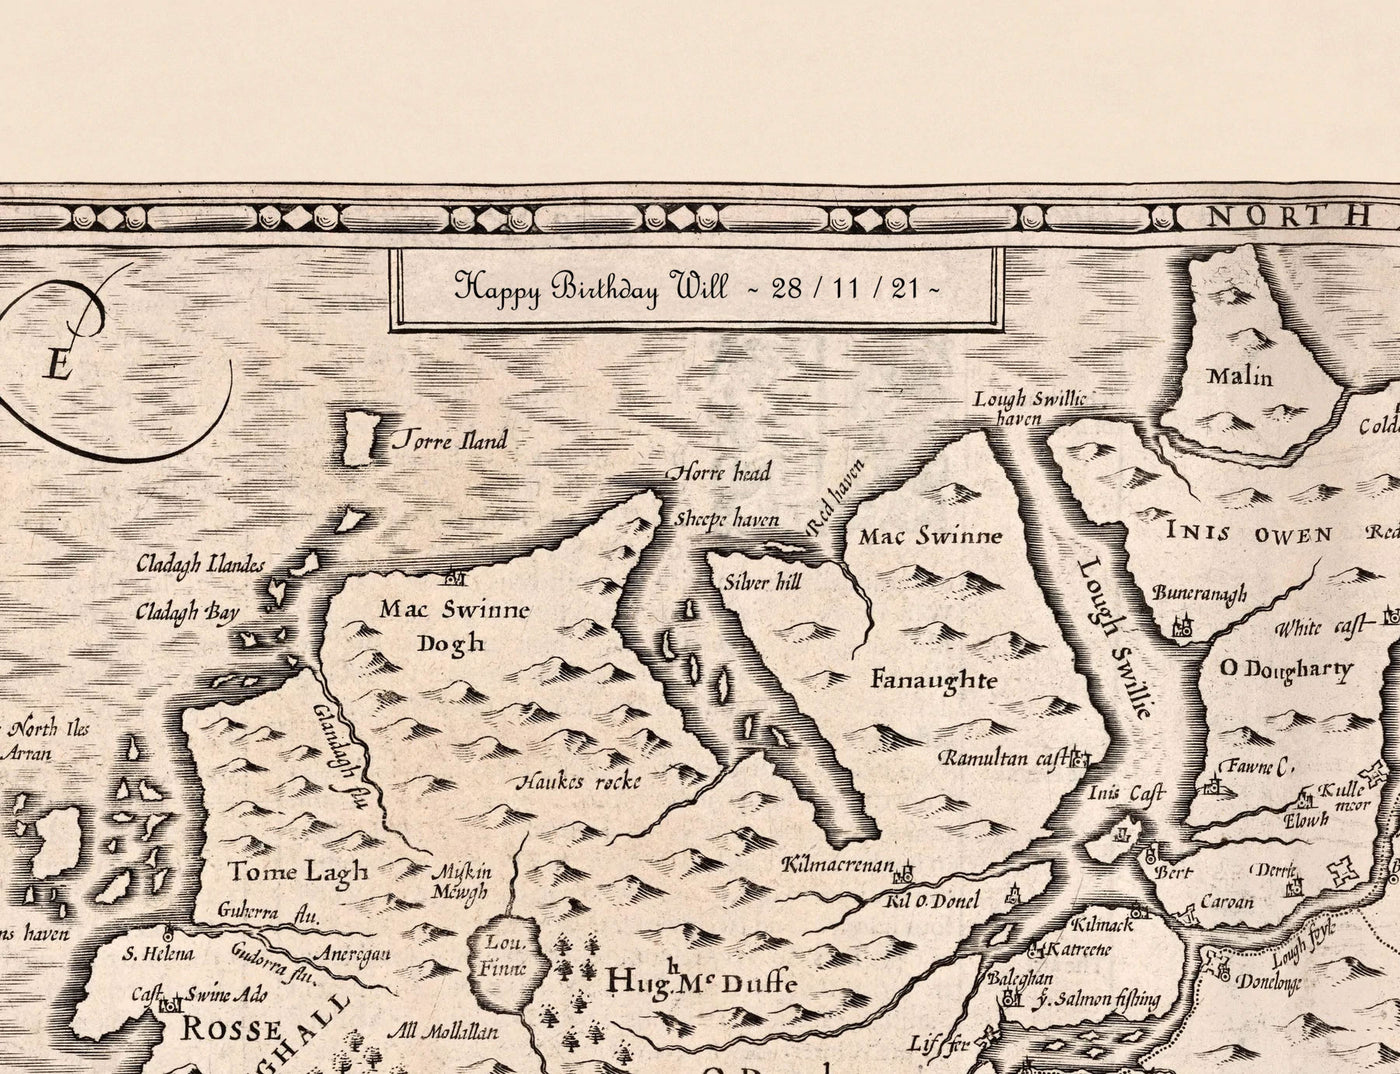 Alte Karte von East London im Jahr 1746 von John Rocque - Stratford, Eastham, Upton Park, Canary Wharf, Plaistow, E3, E6, E13, E14, E15, E16